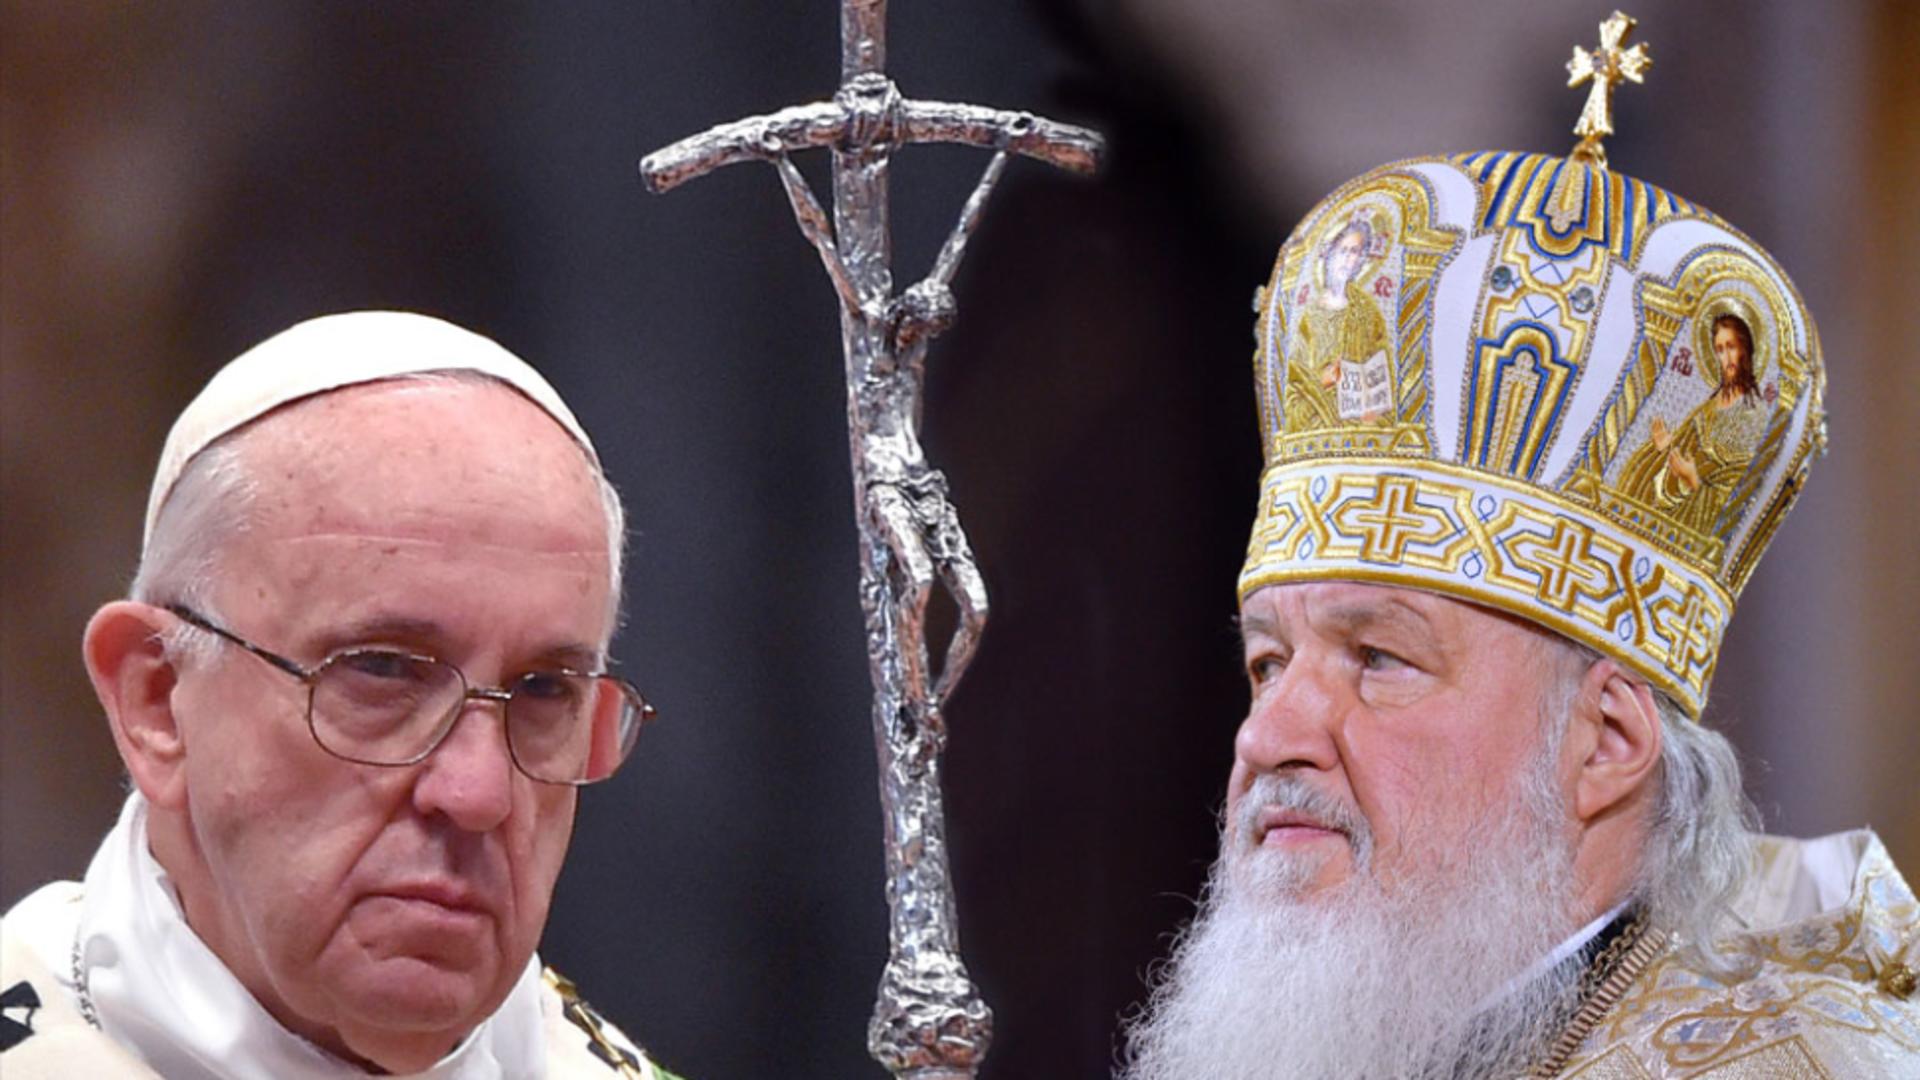 Papa Francisc și patriarhul Bisericii Ortodoxe Ruse - Kiril Foto: Ria Novosti